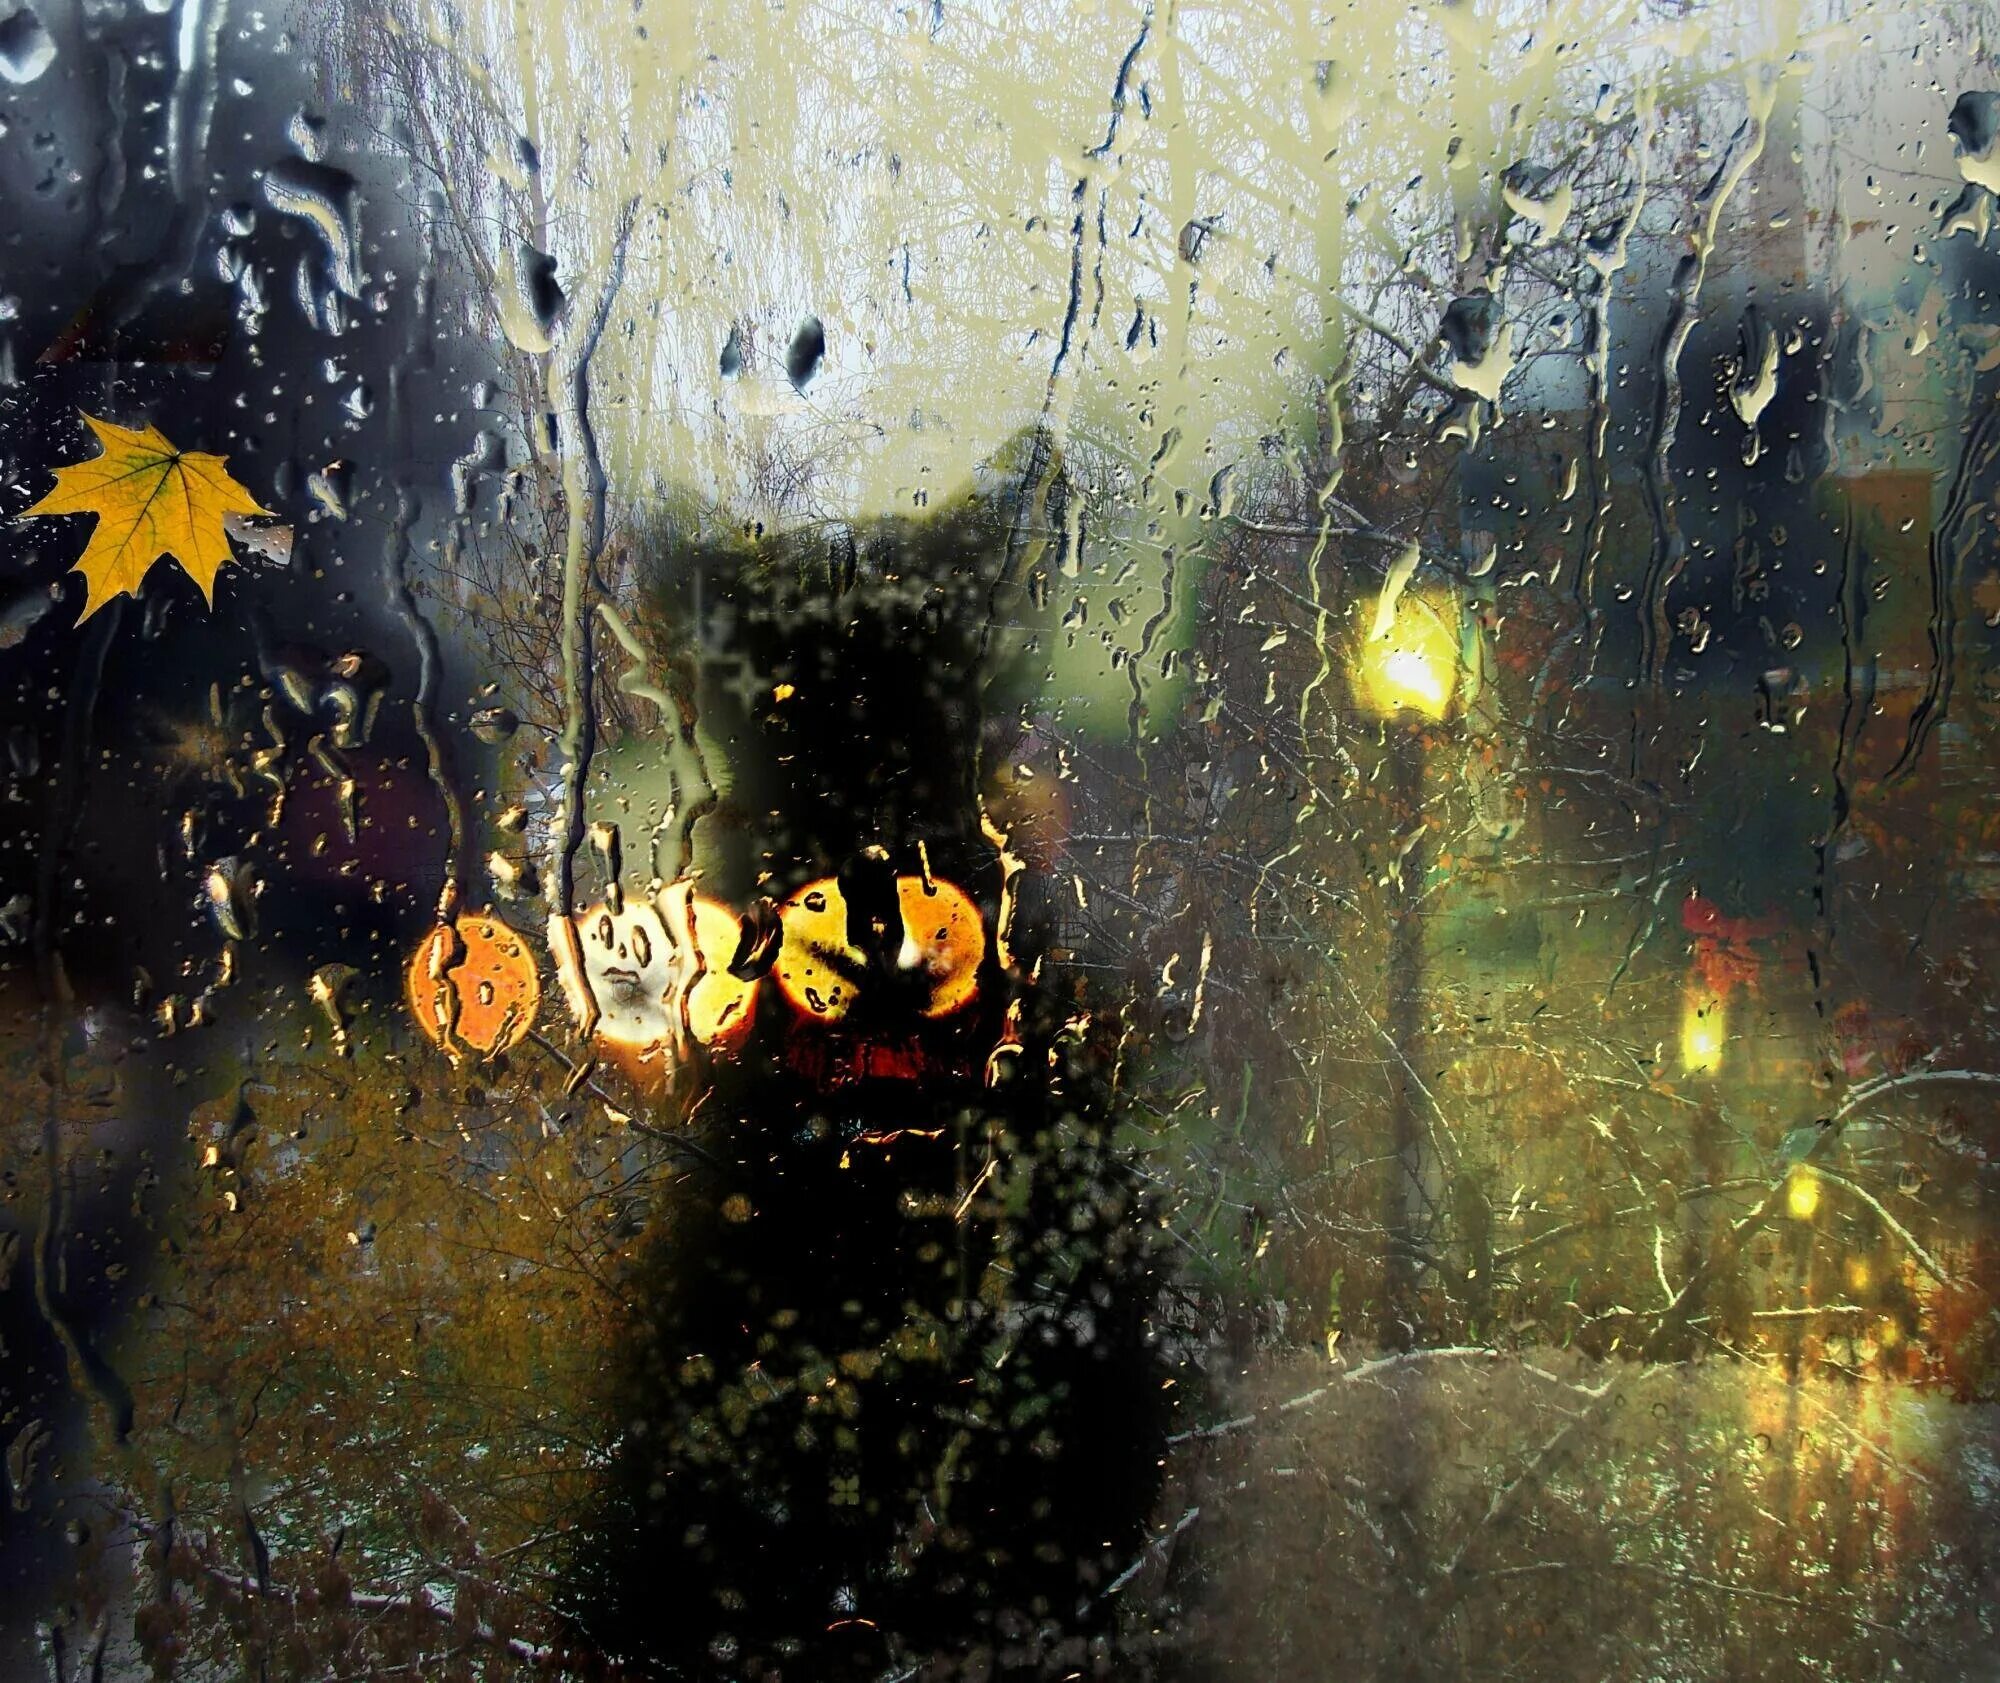 Ilgiz за окном дождь. Осень дождь. Дождь за окном. Капли на стекле живопись. Осеннее окно дождь.